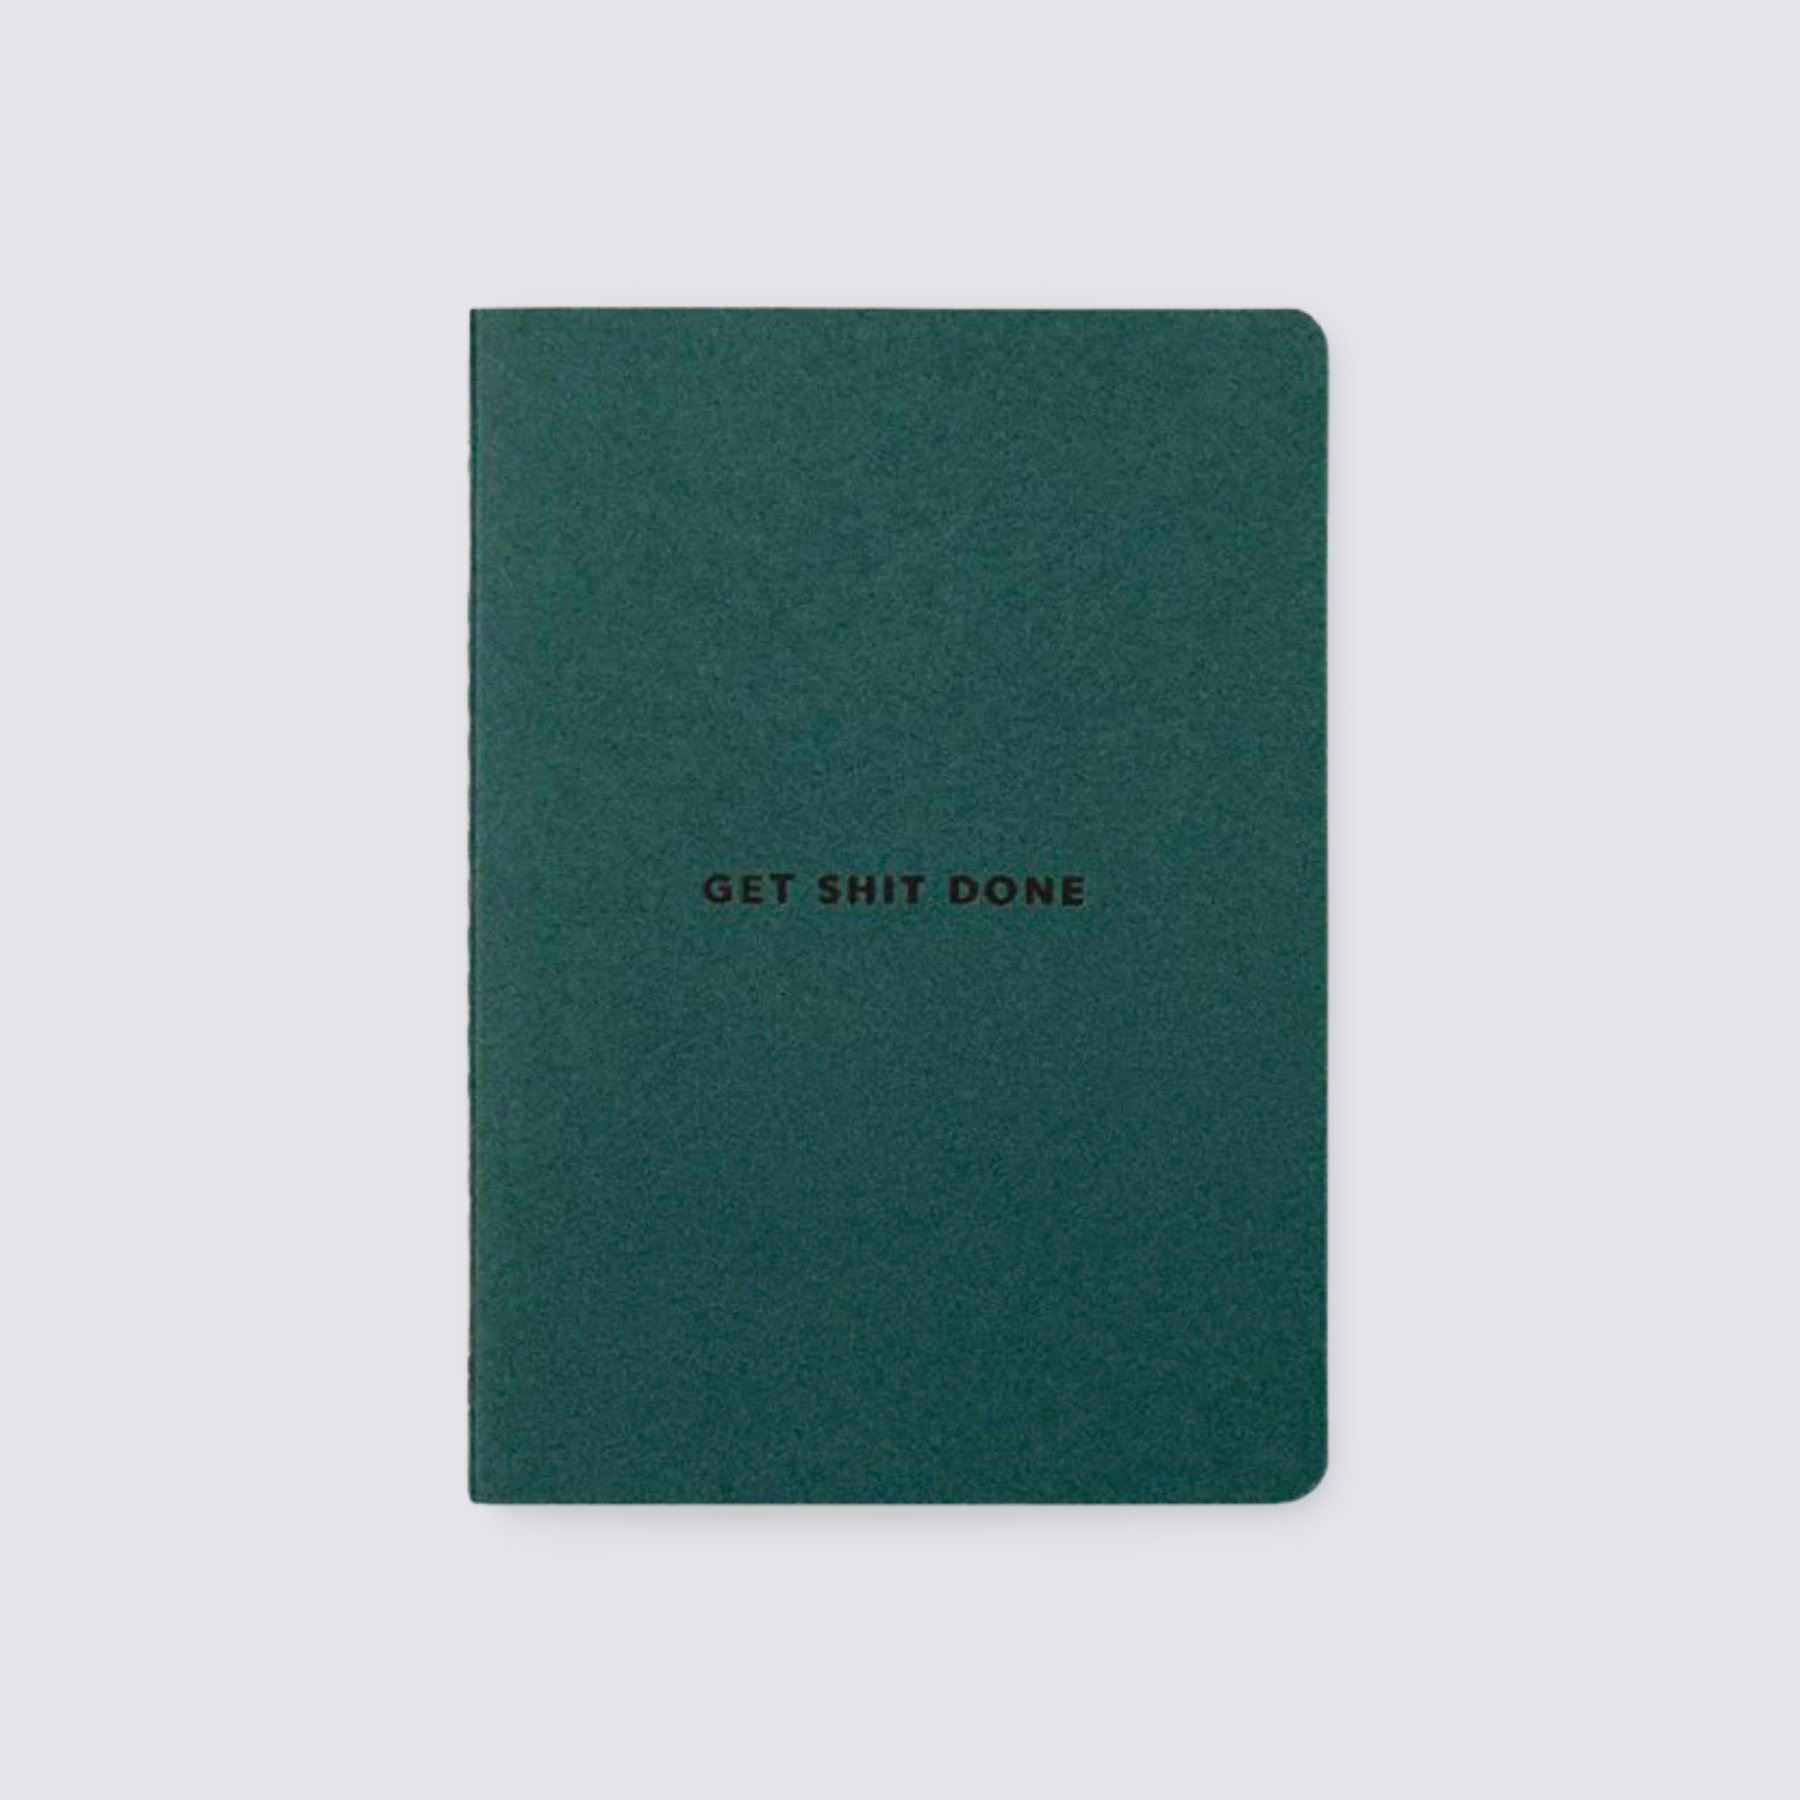 Teal green a6 notebook